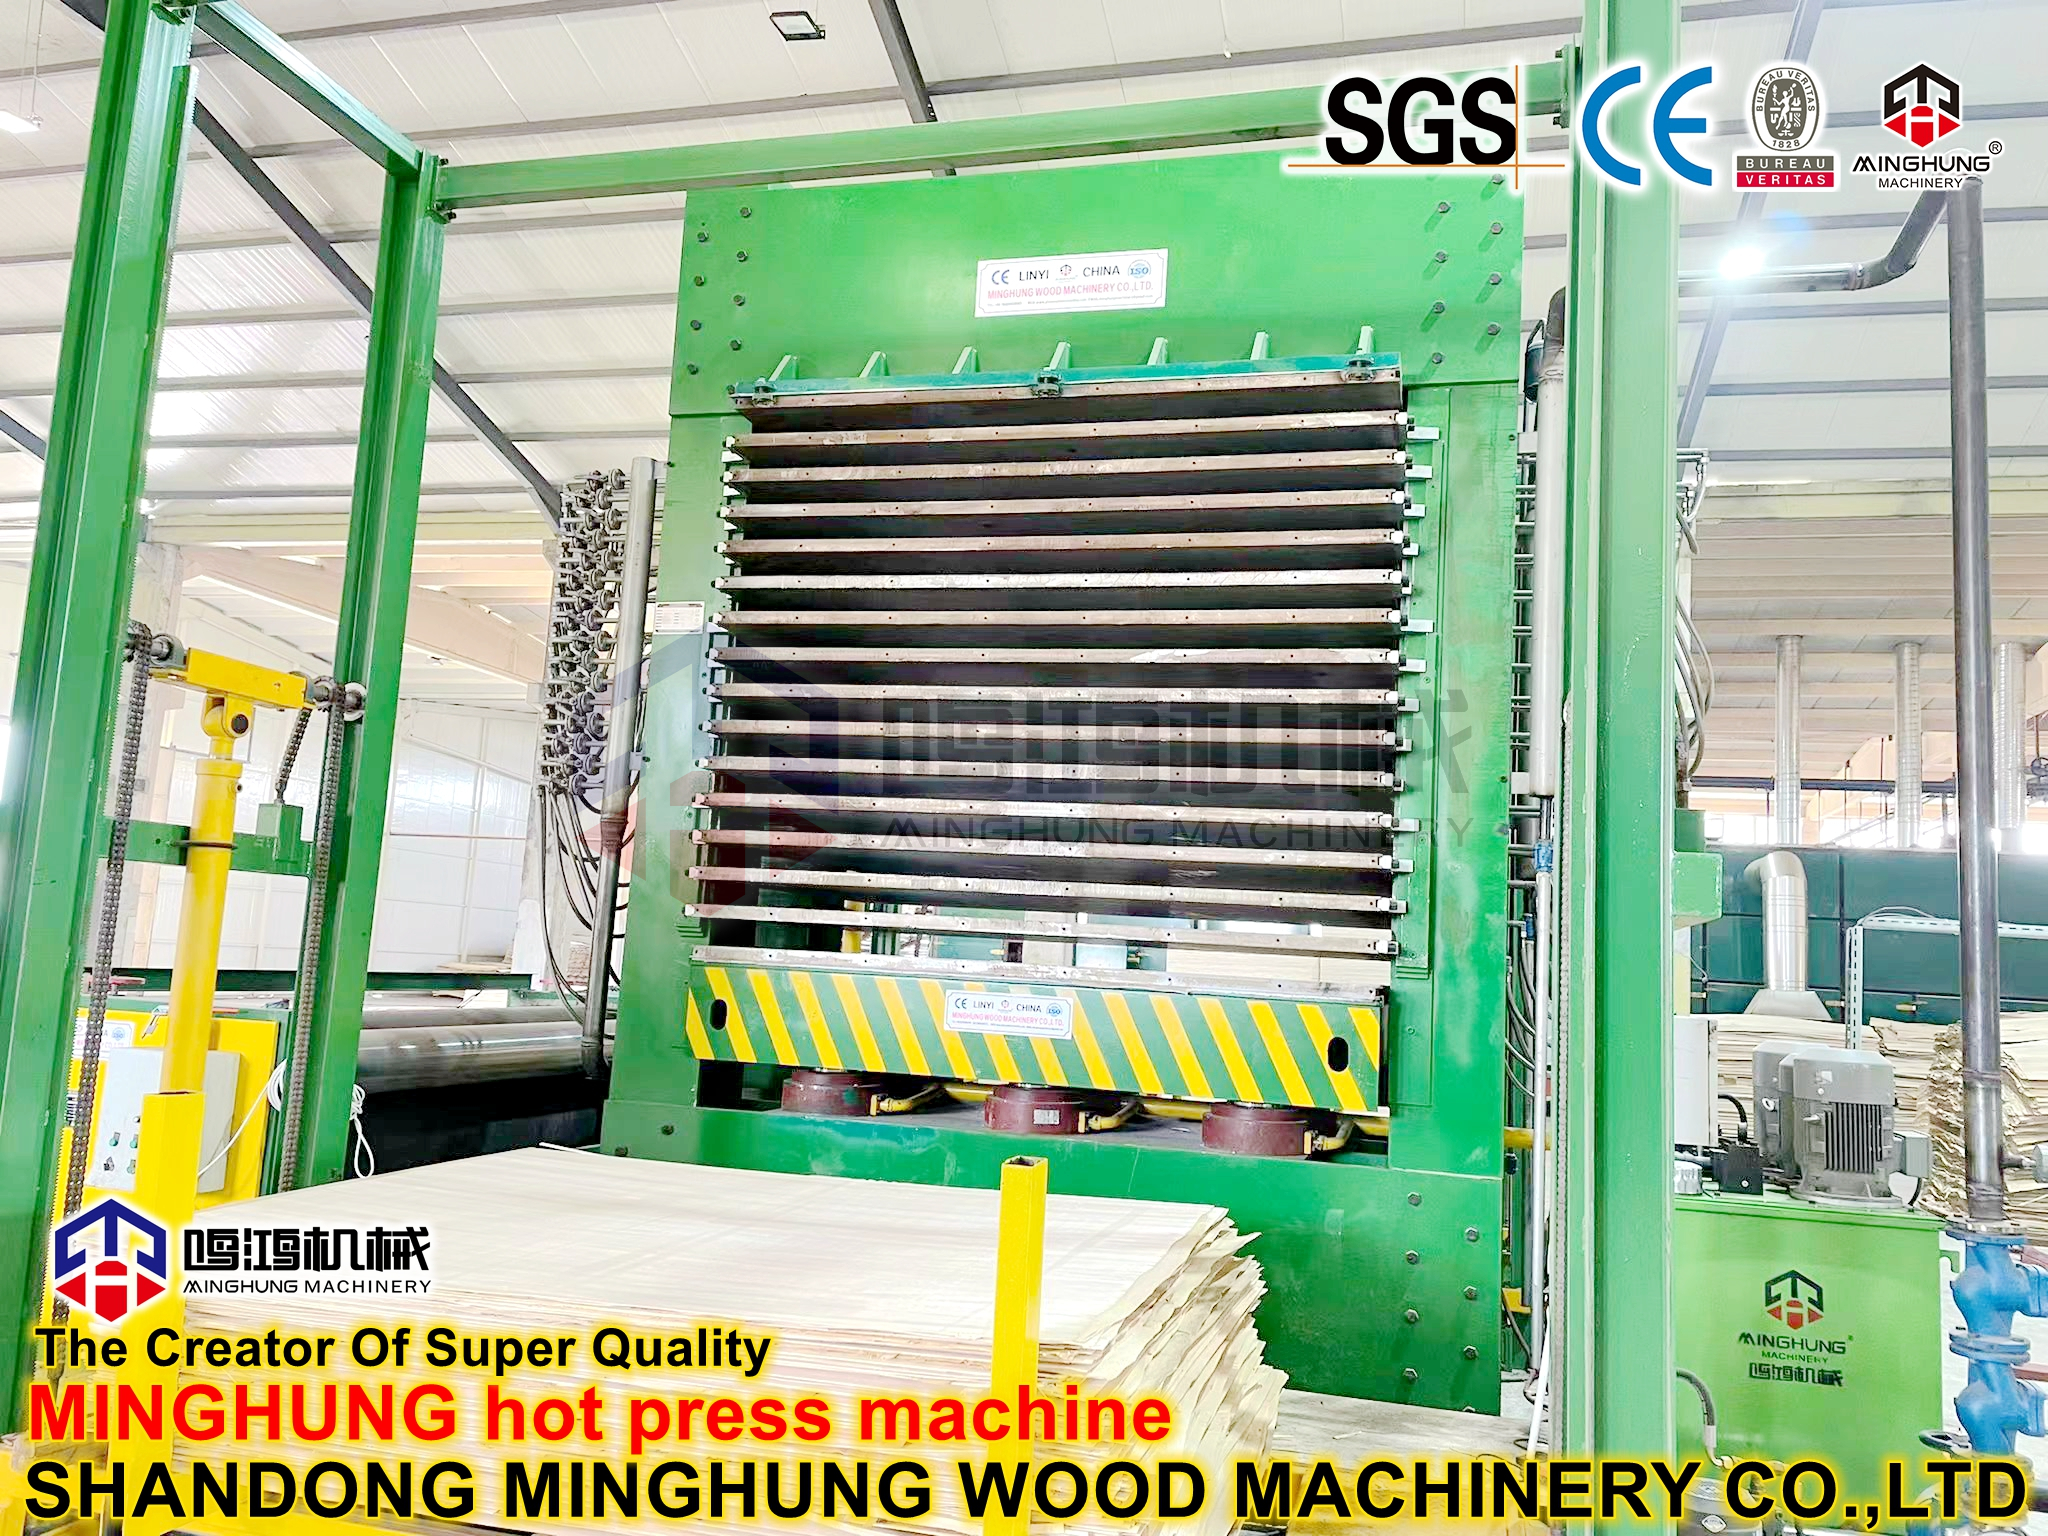 MINGHUNG hot press machine